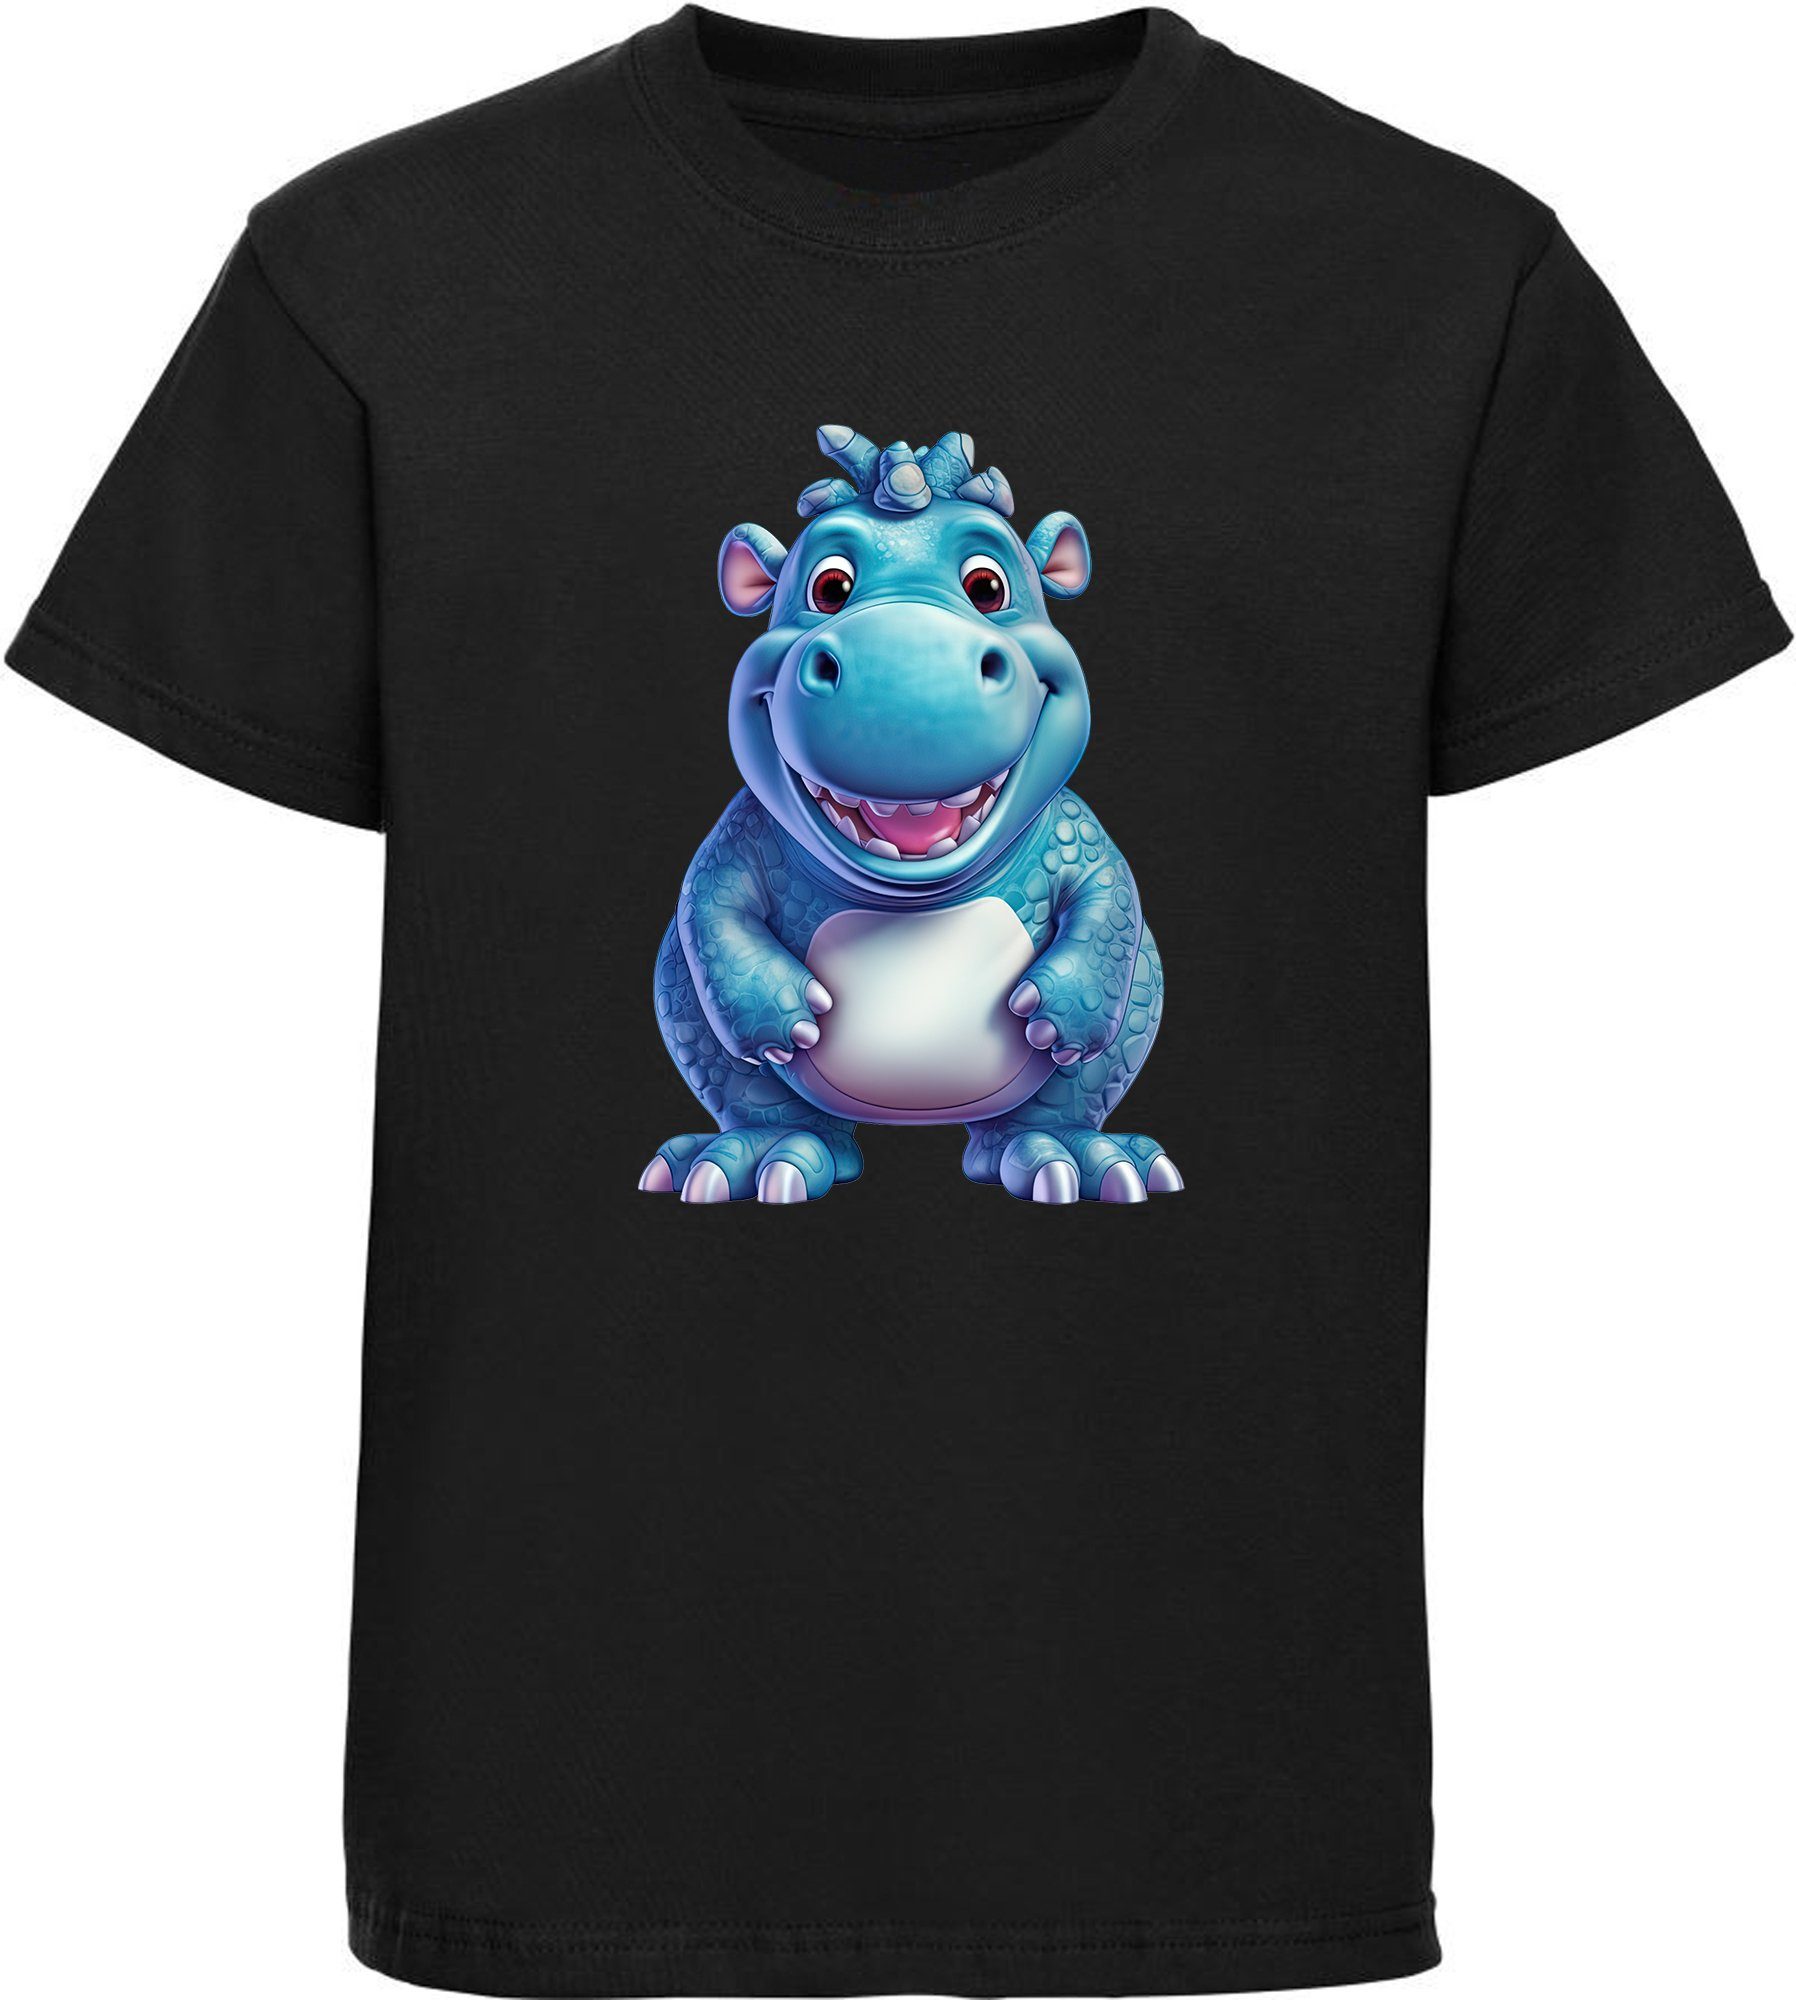 MyDesign24 T-Shirt Kinder Wildtier Print Shirt bedruckt - Baby Hippo Nilpferd Baumwollshirt mit Aufdruck, i274 schwarz